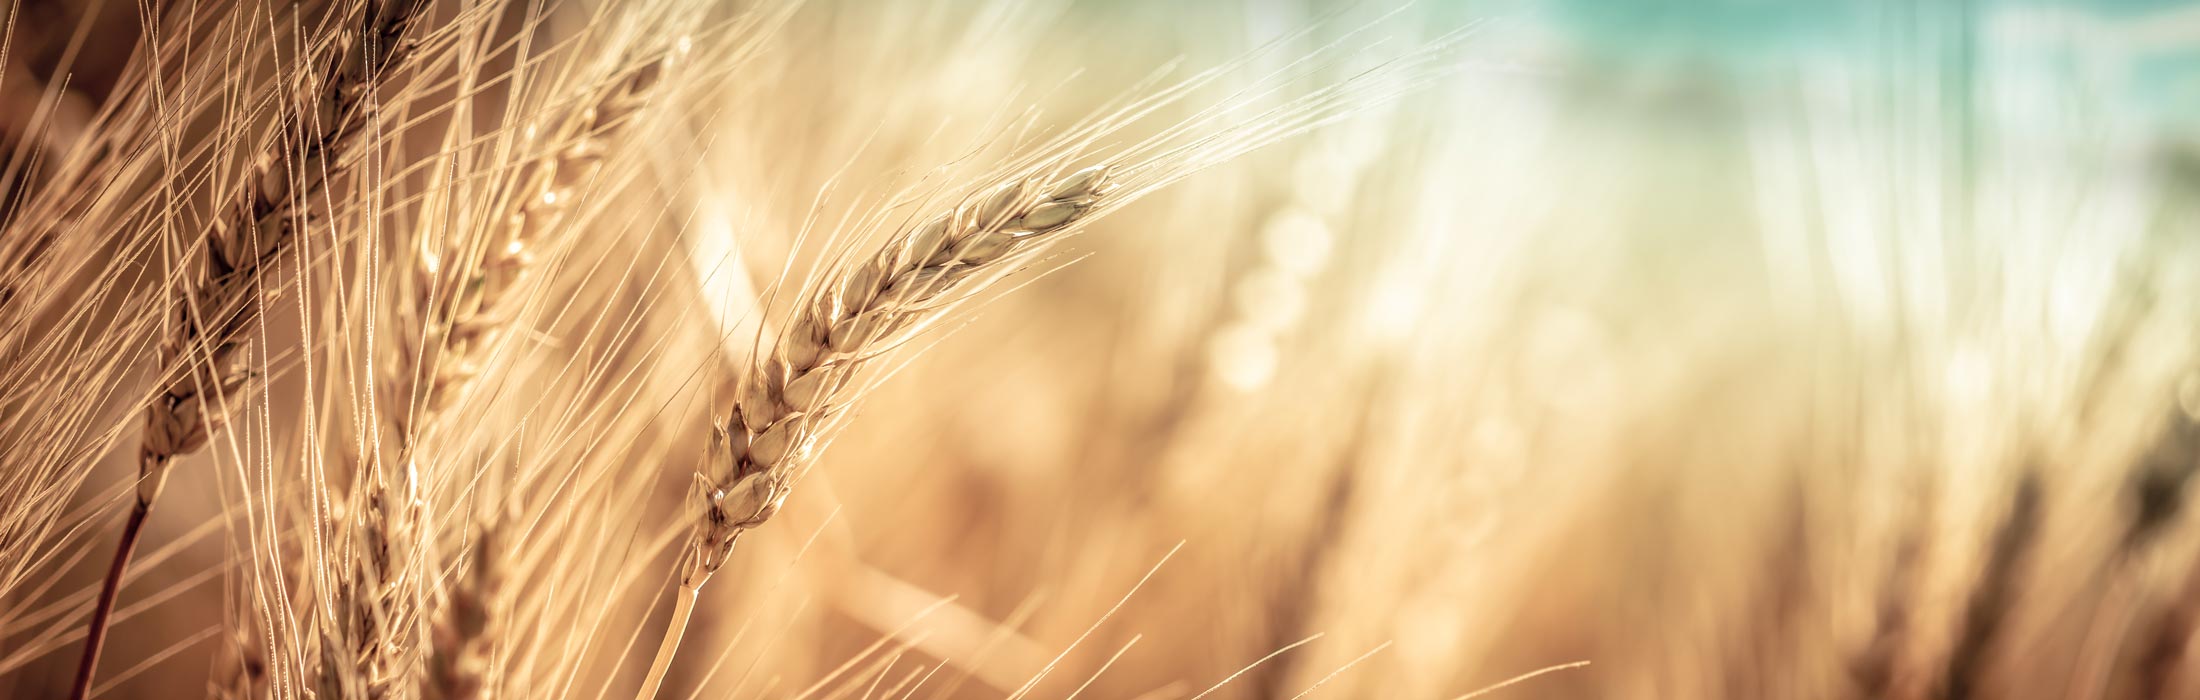 wheat in a wheat field